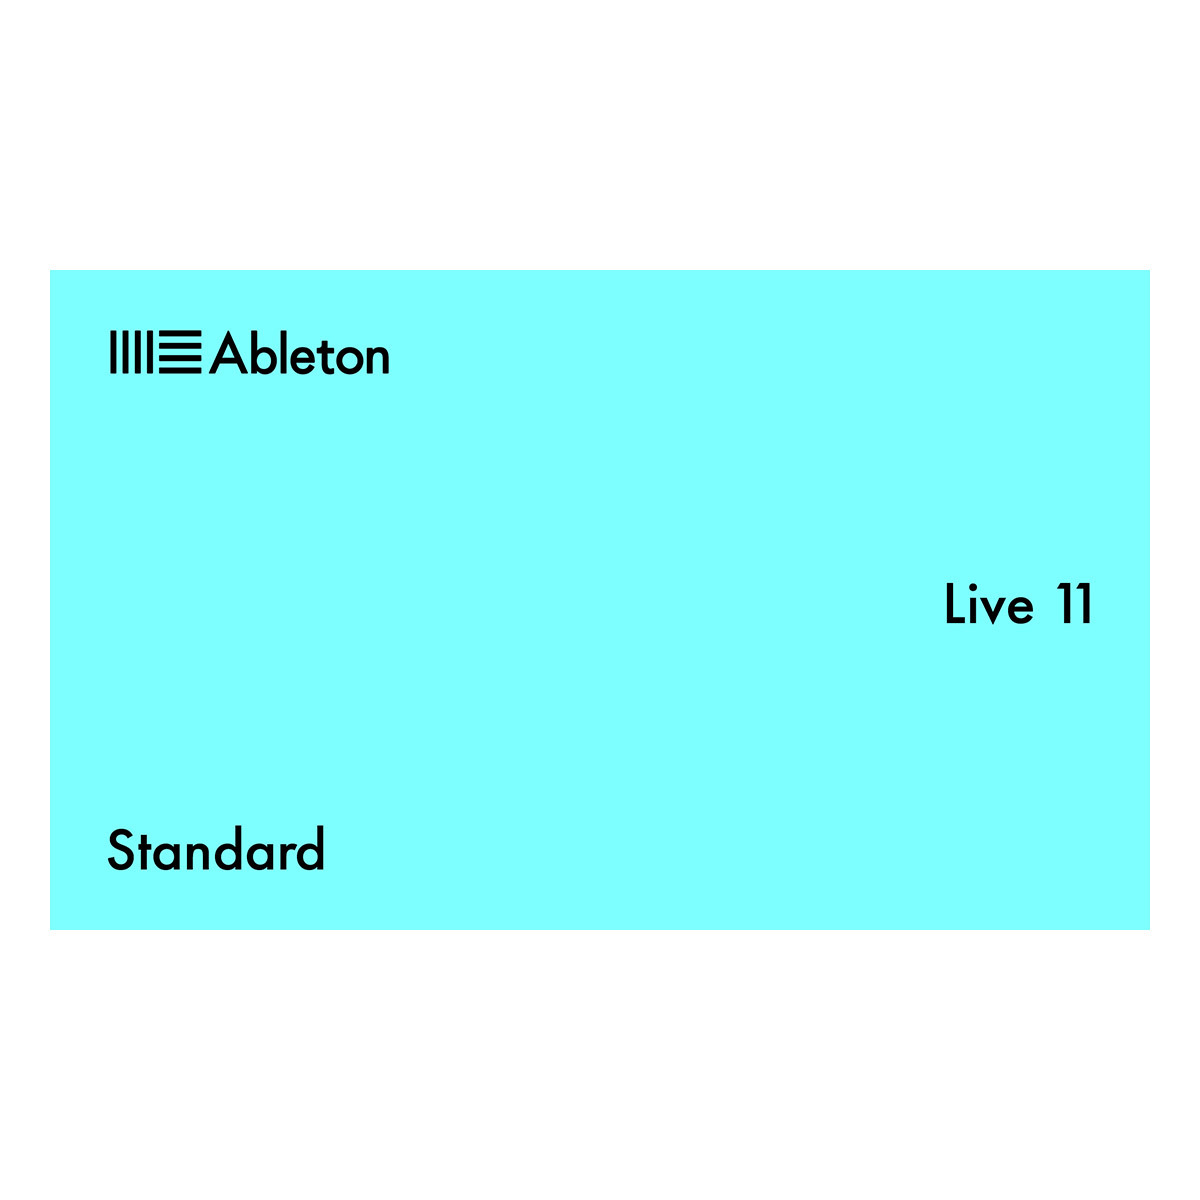 AbletonLIVE11 Standard